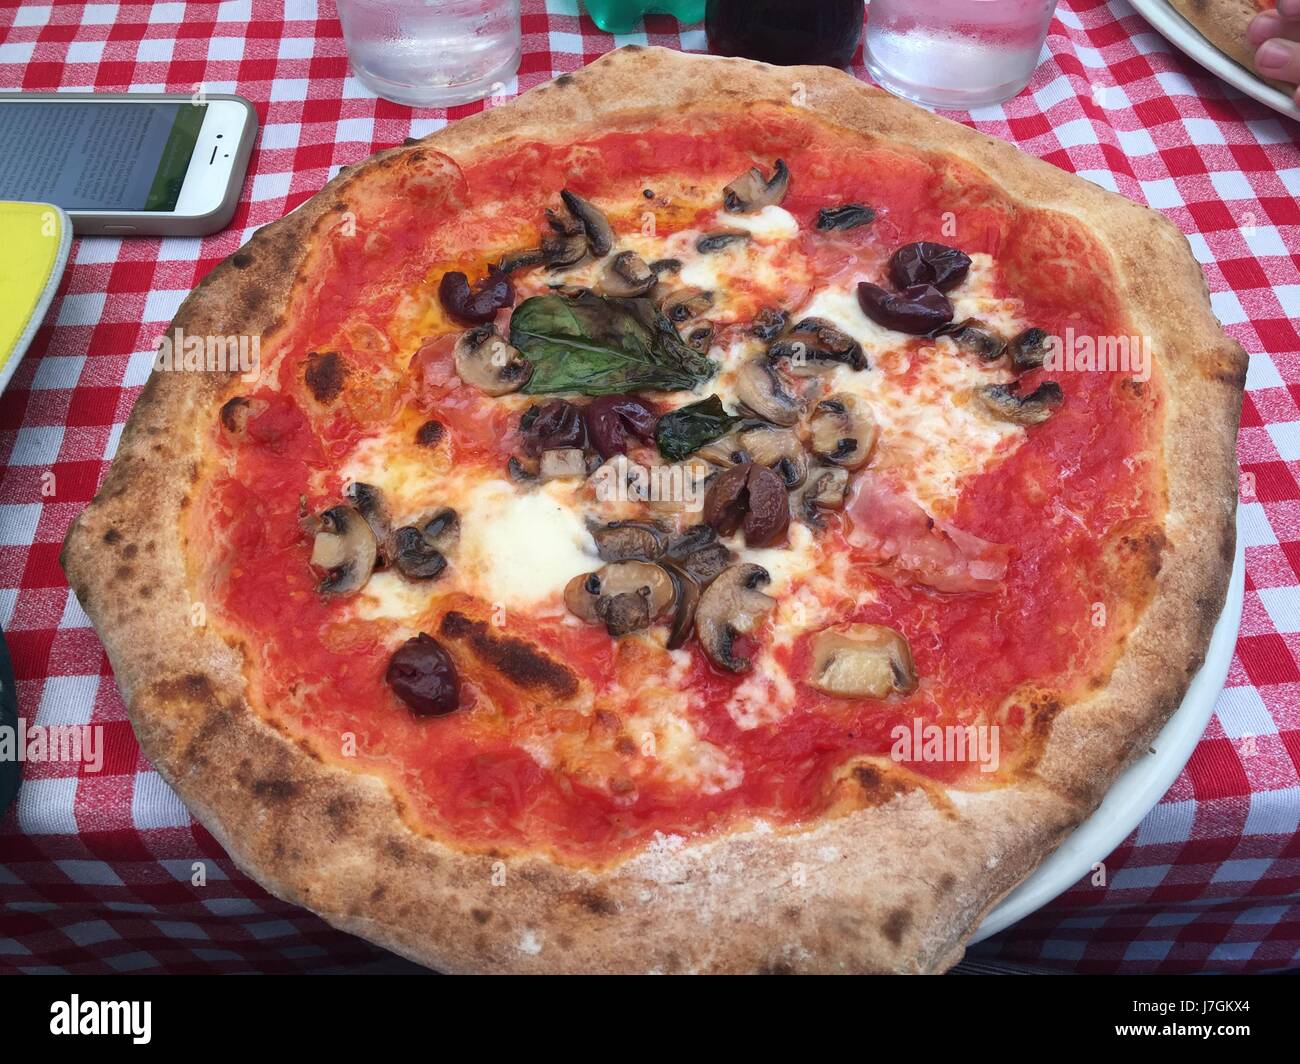 Pizza from Naples, Italy Stock Photo